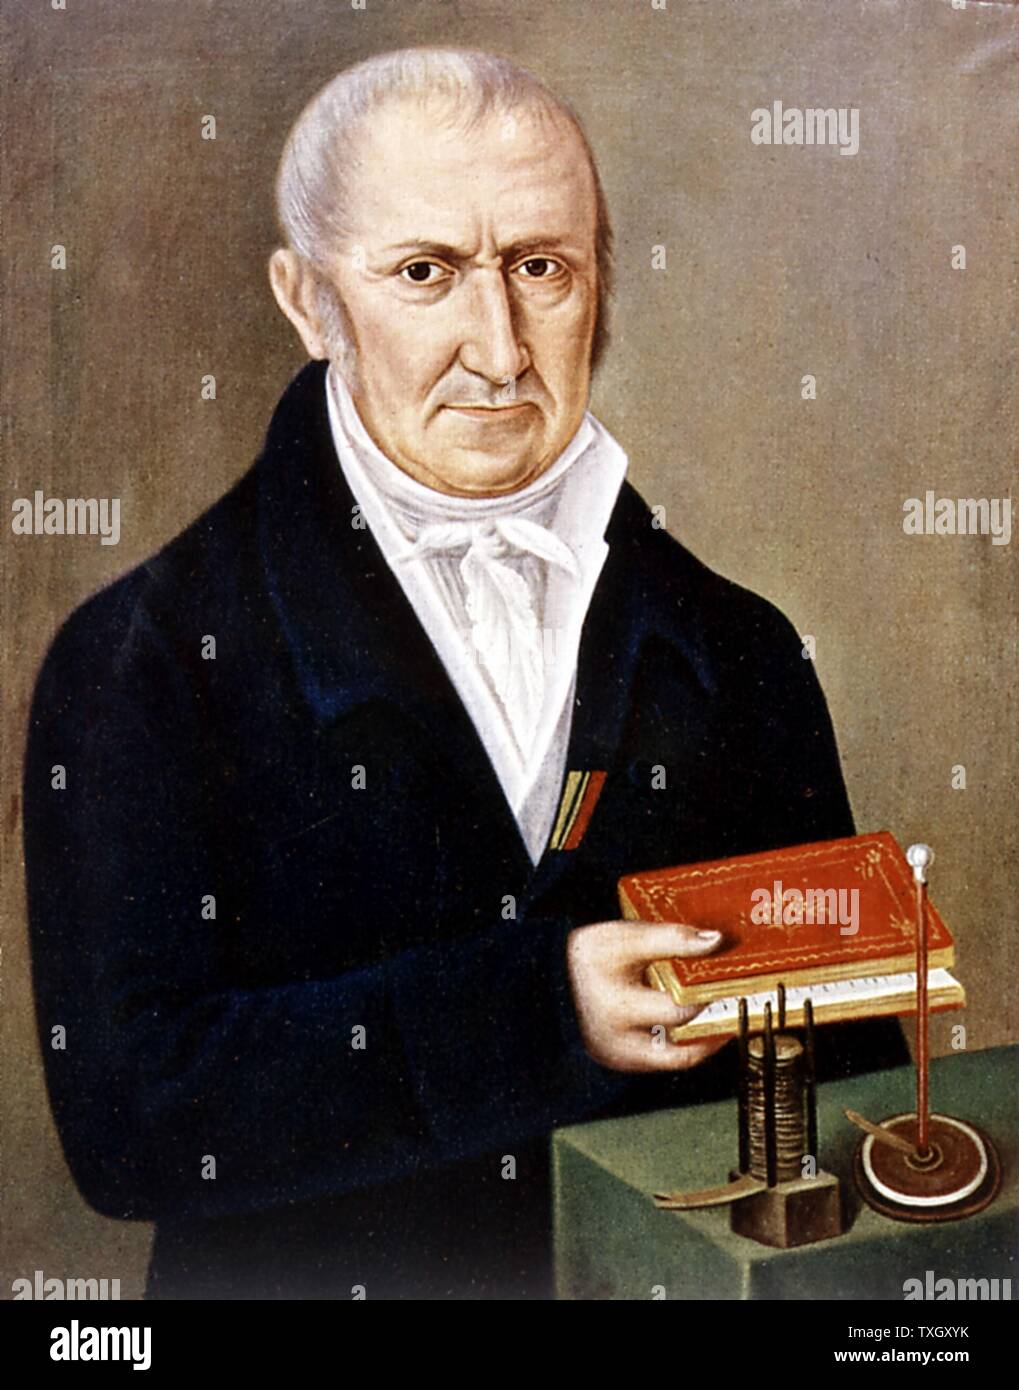 Alessandro Volta fisico italiano. Sul tavolo sono due delle sue invenzioni, la pila voltaica (batterie umide) sulla sinistra e elettroforo, un apparecchio per dimostrare la carica elettrostatica mediante induzione. Il suo nome dato all'unità di differenza di potenziale elettrico. Foto Stock